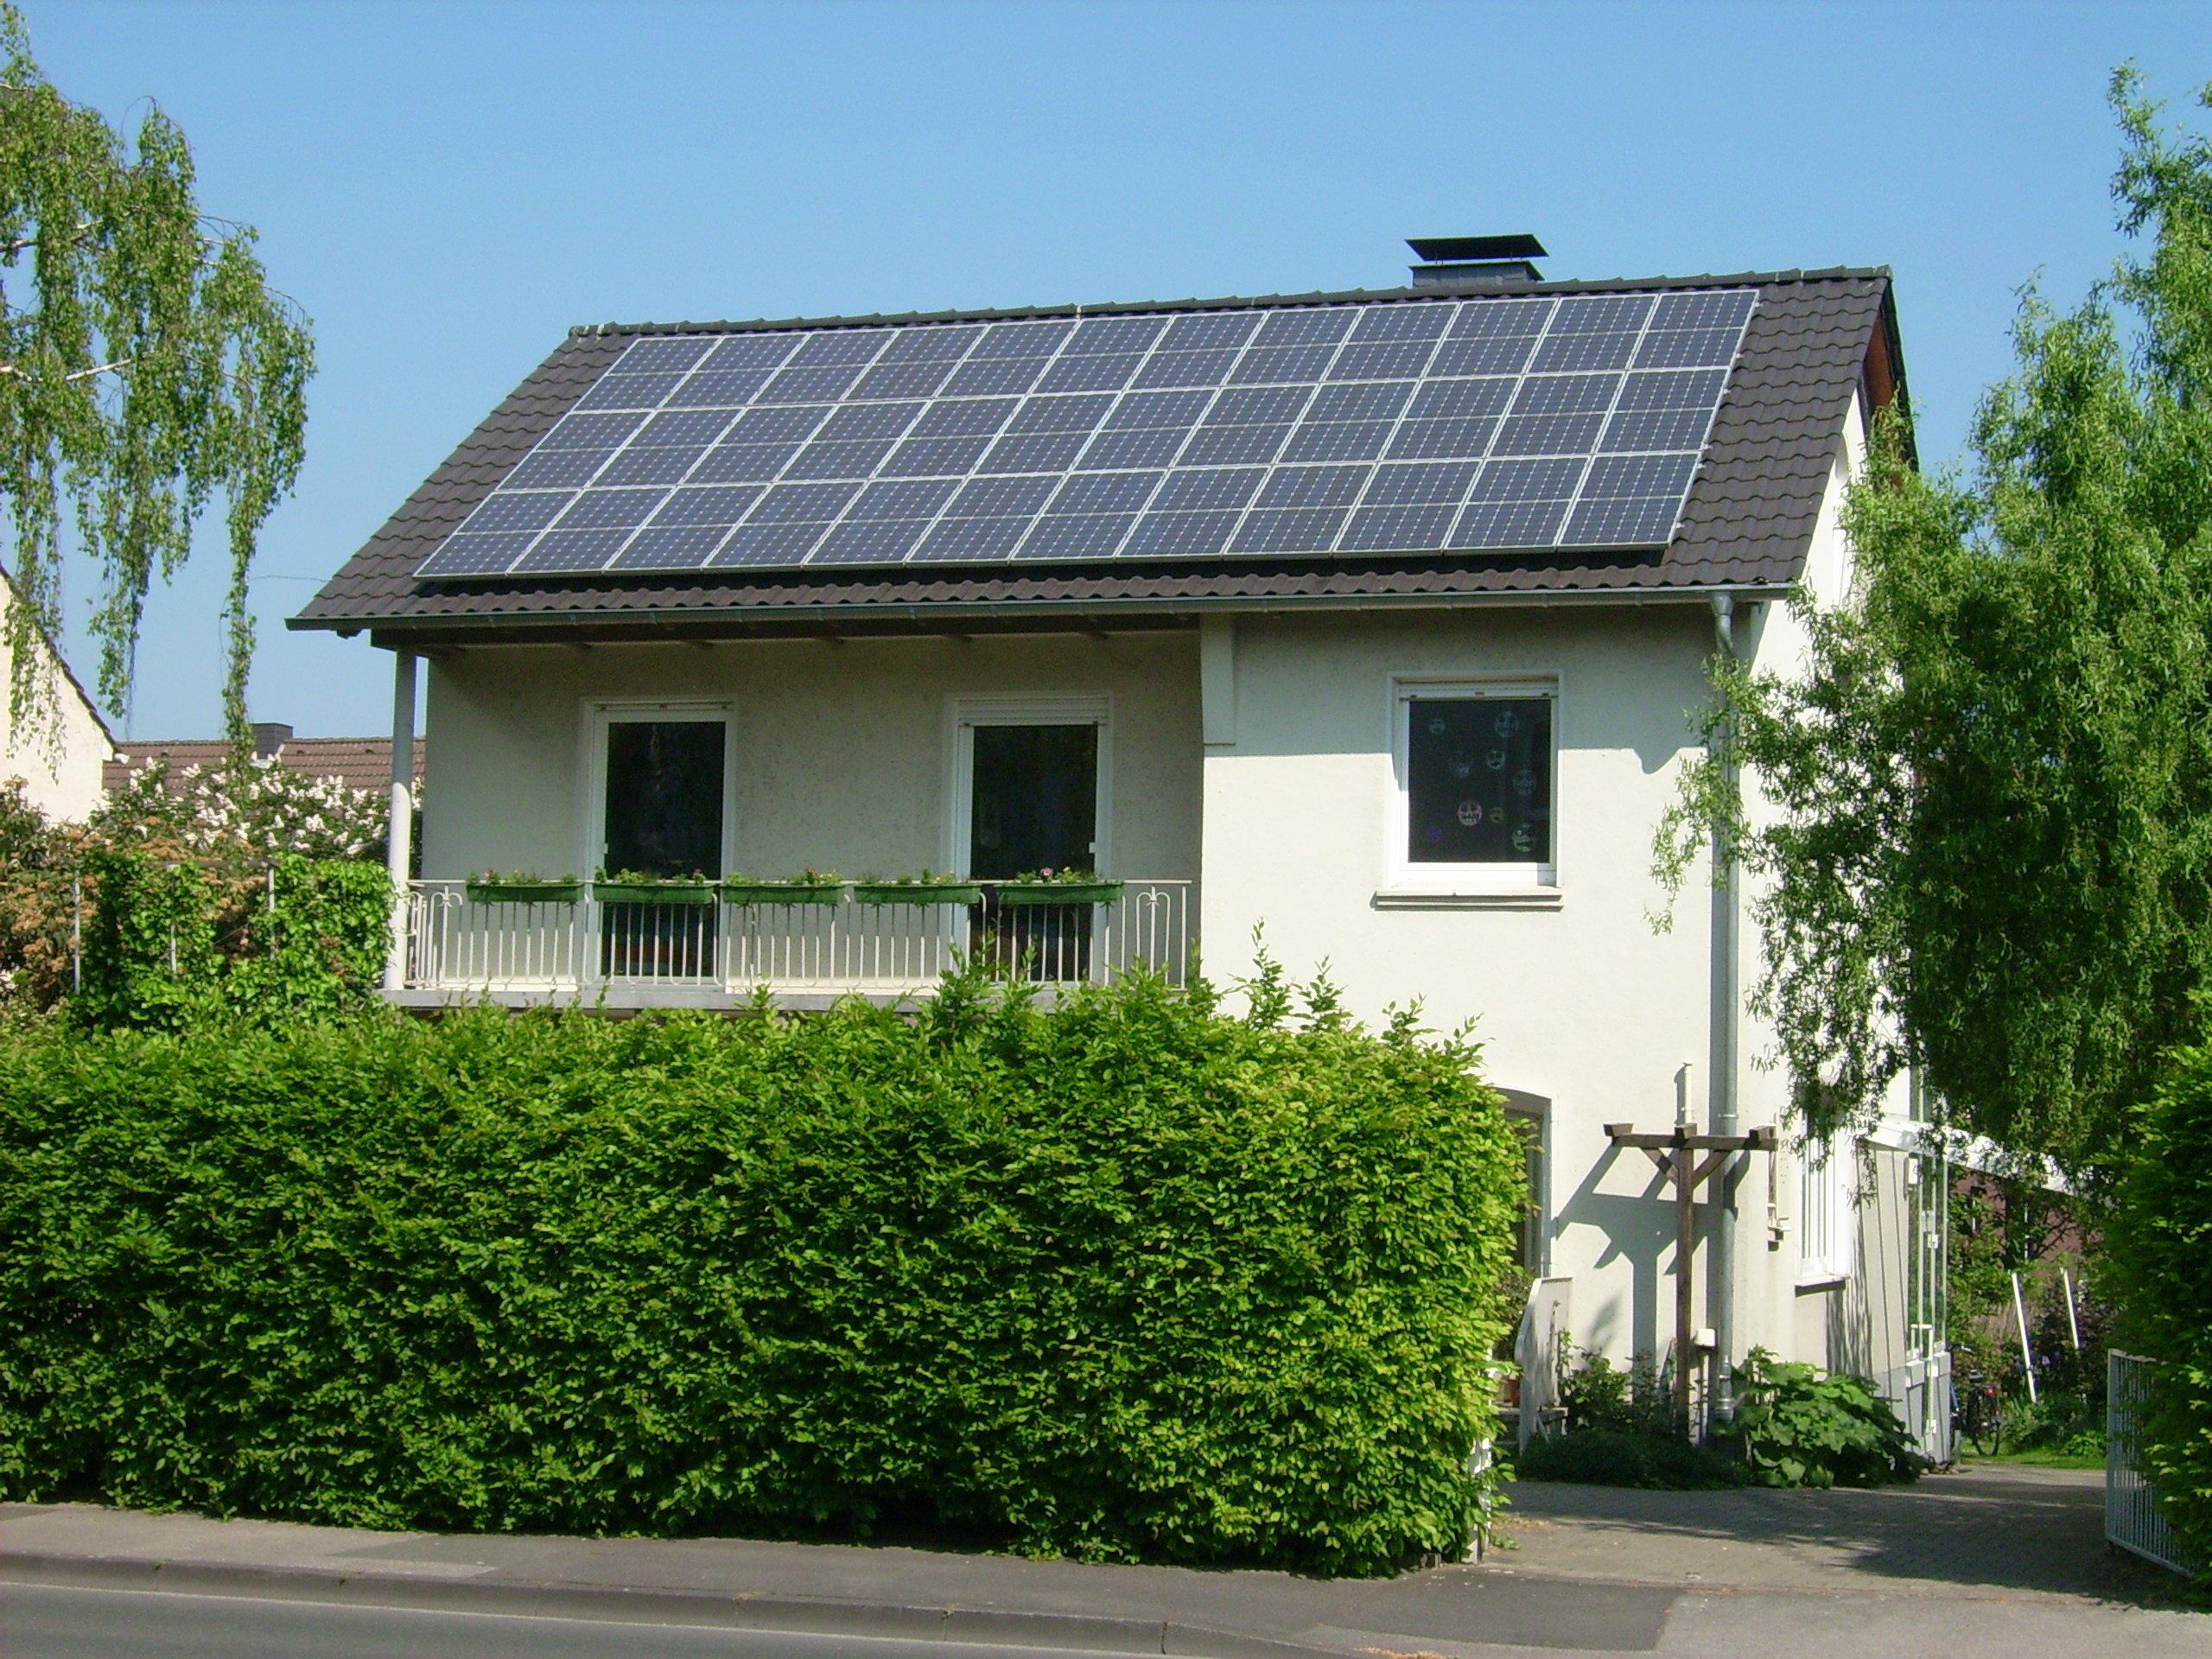 Ein Einfamilienhaus im Grünen mit Solarpanelen auf dem Dach.